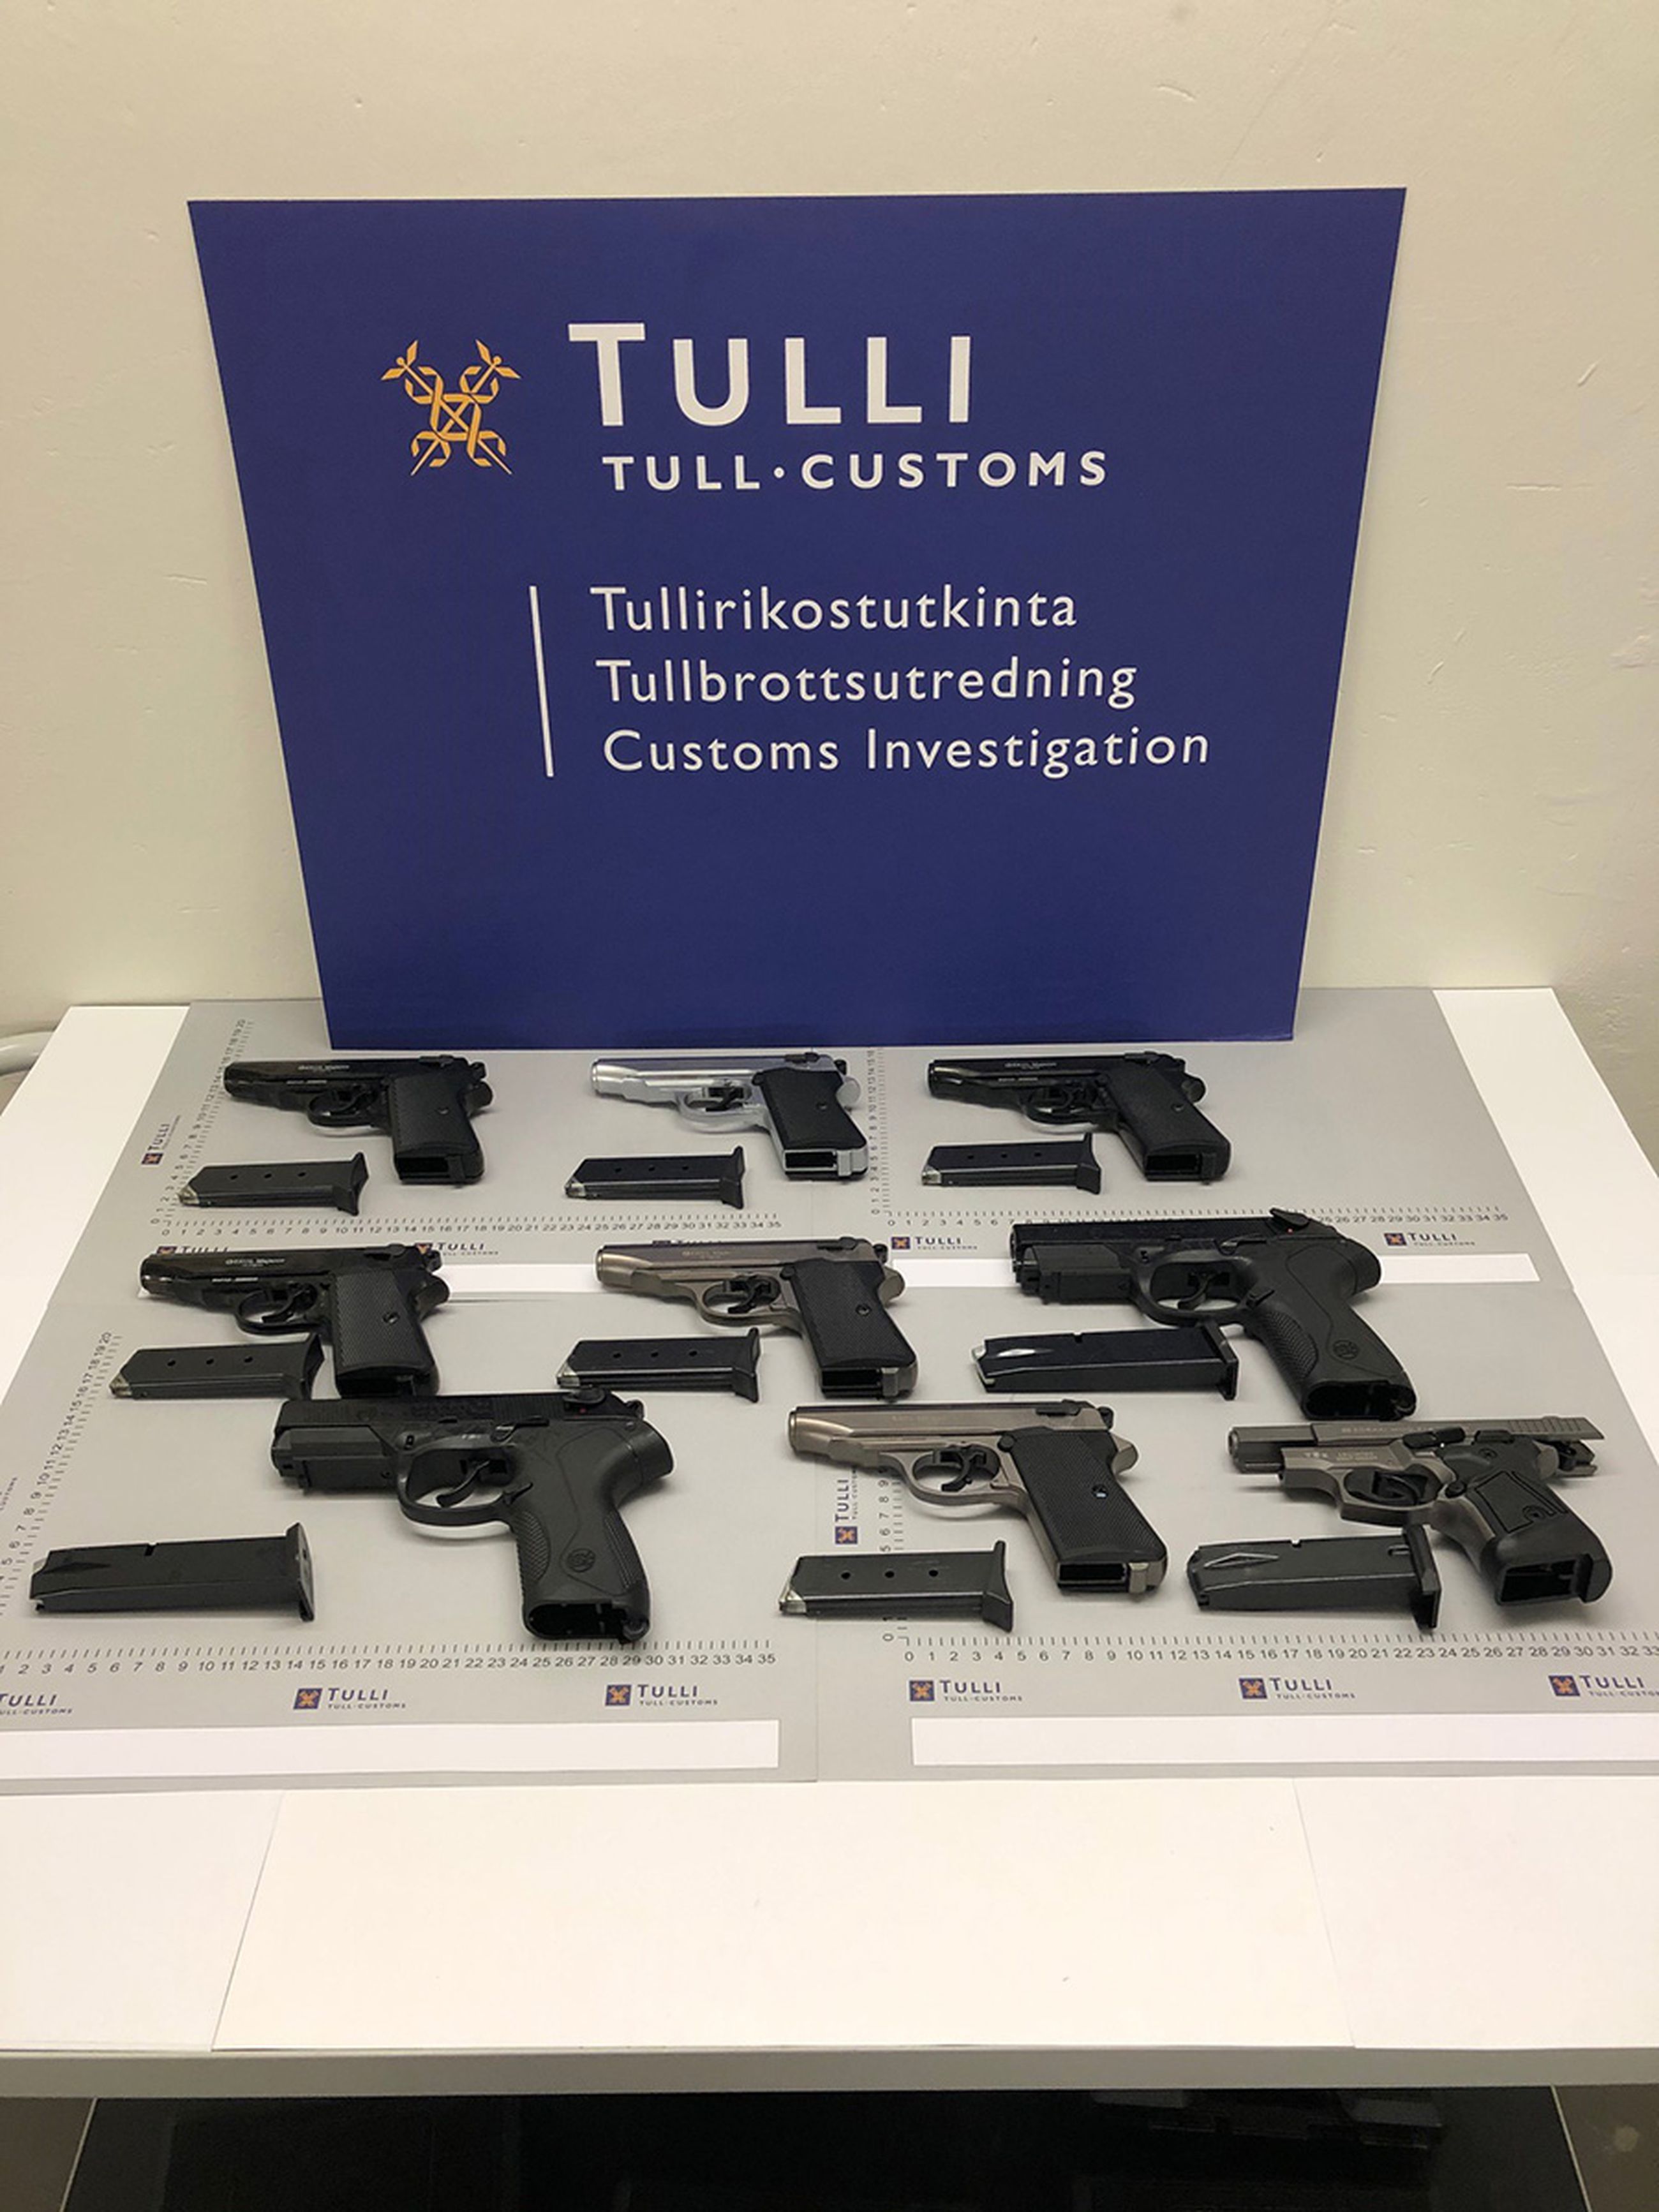 Aseiden maahantuonnista epäillään ympäri Suomea asuvia henkilöitä ja tulli on ottanut rikoskokonaisuudessa kiinni myös yli kymmenen Pohjois-Pohjanmaalle suunnattua lähetystä.